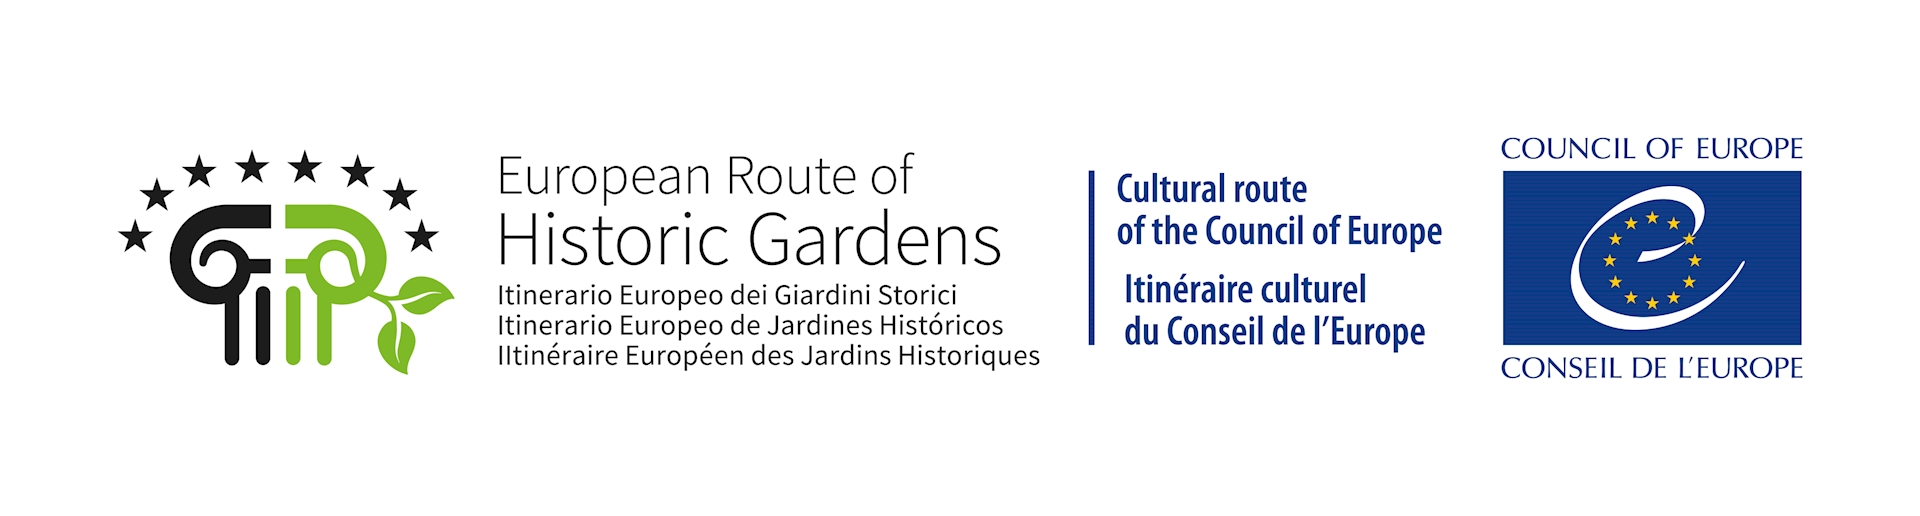 Itinerário Europeu dos Jardins Históricos